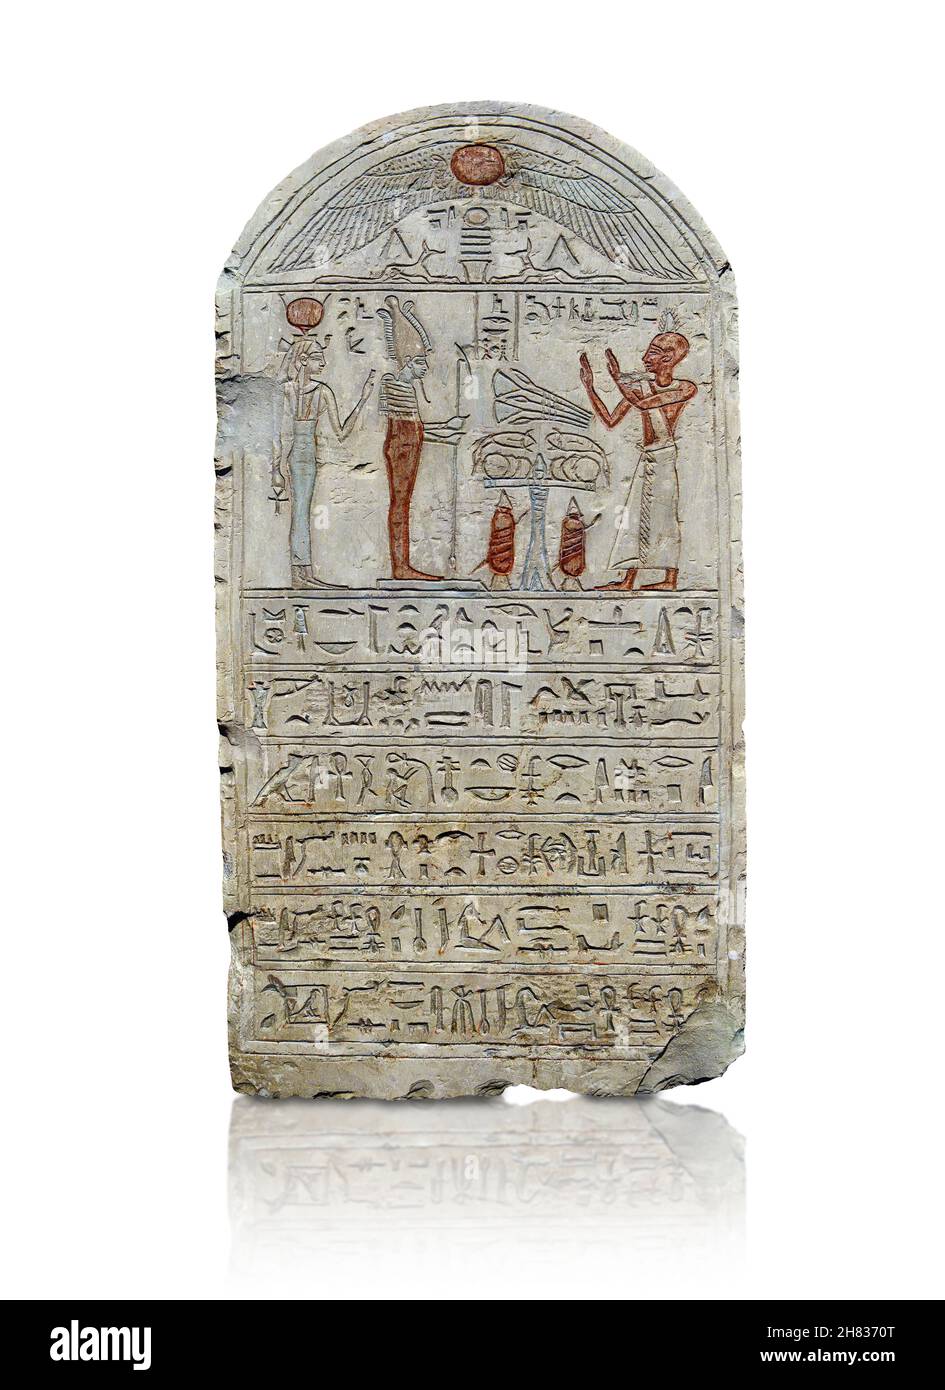 Alte ägyptische Reliefstele von Nesamun, 600-550 v. Chr., 26th Dynastie, Abydos. Kunsthistorisches Museum Wien ALS 119. In der Verkleidung unter dem Bügel befindet sich ein Stockfoto